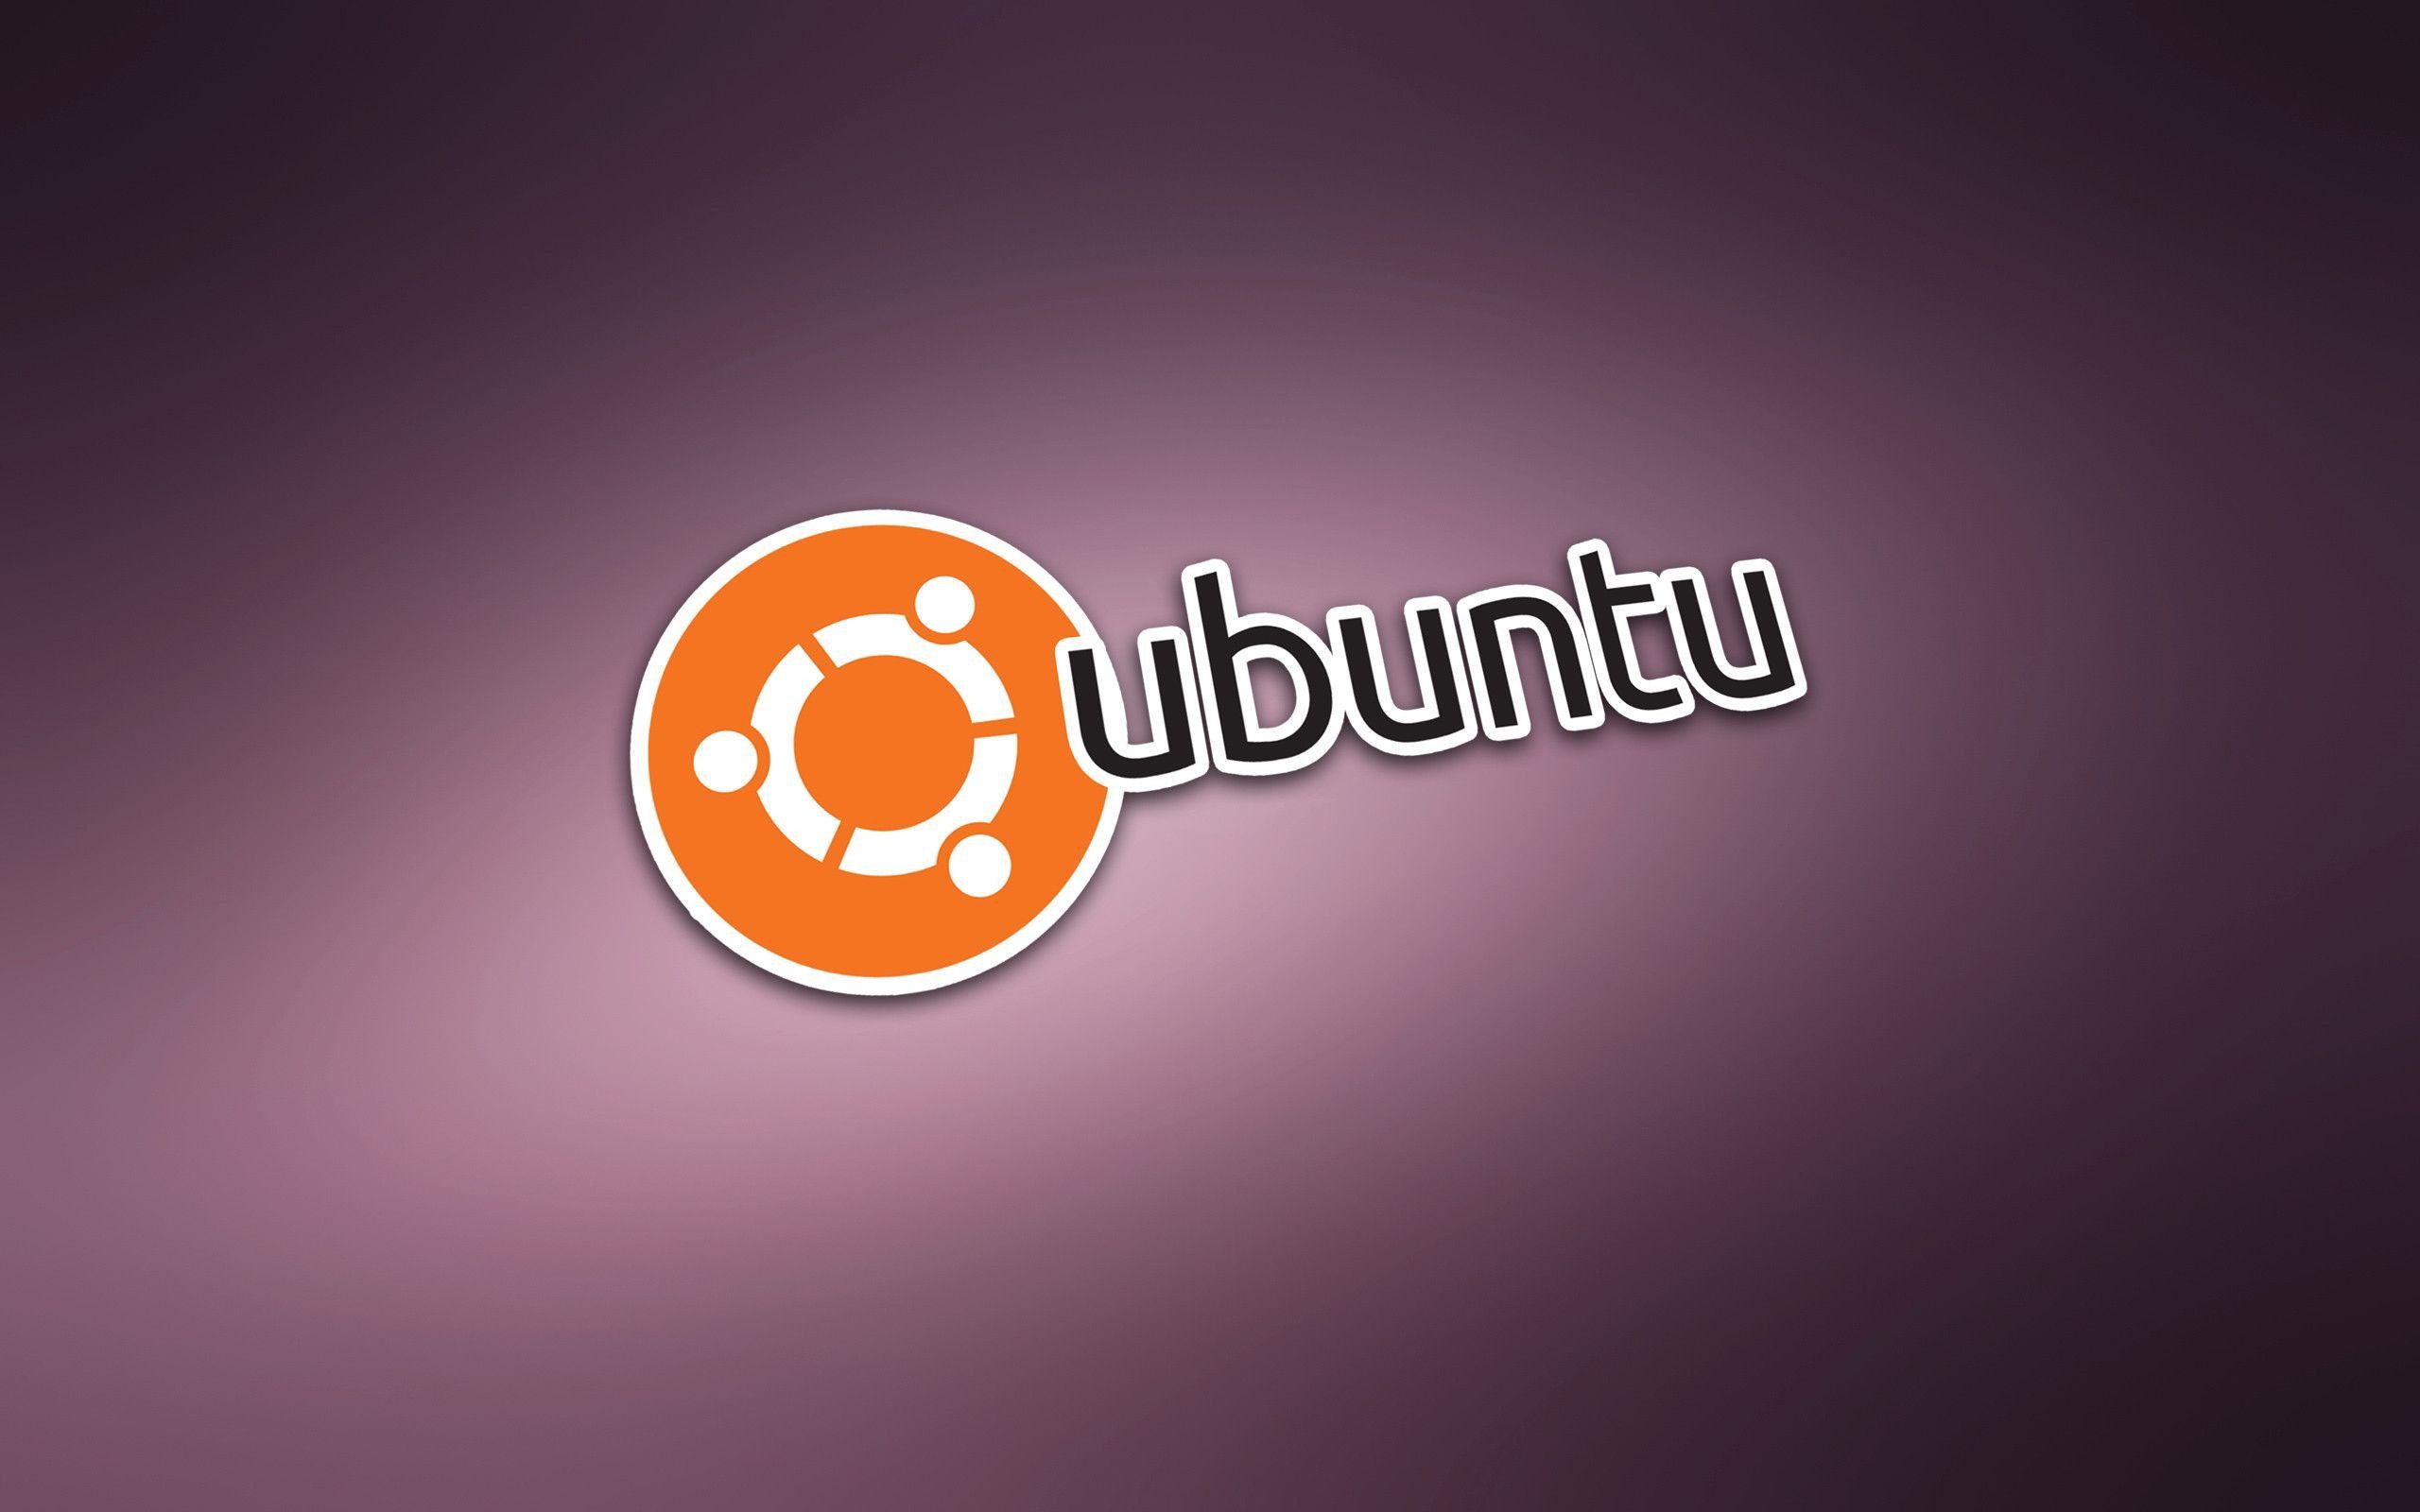 2560x1600 Ubuntu Backgrounds - High-quality Ubuntu background images for your PC